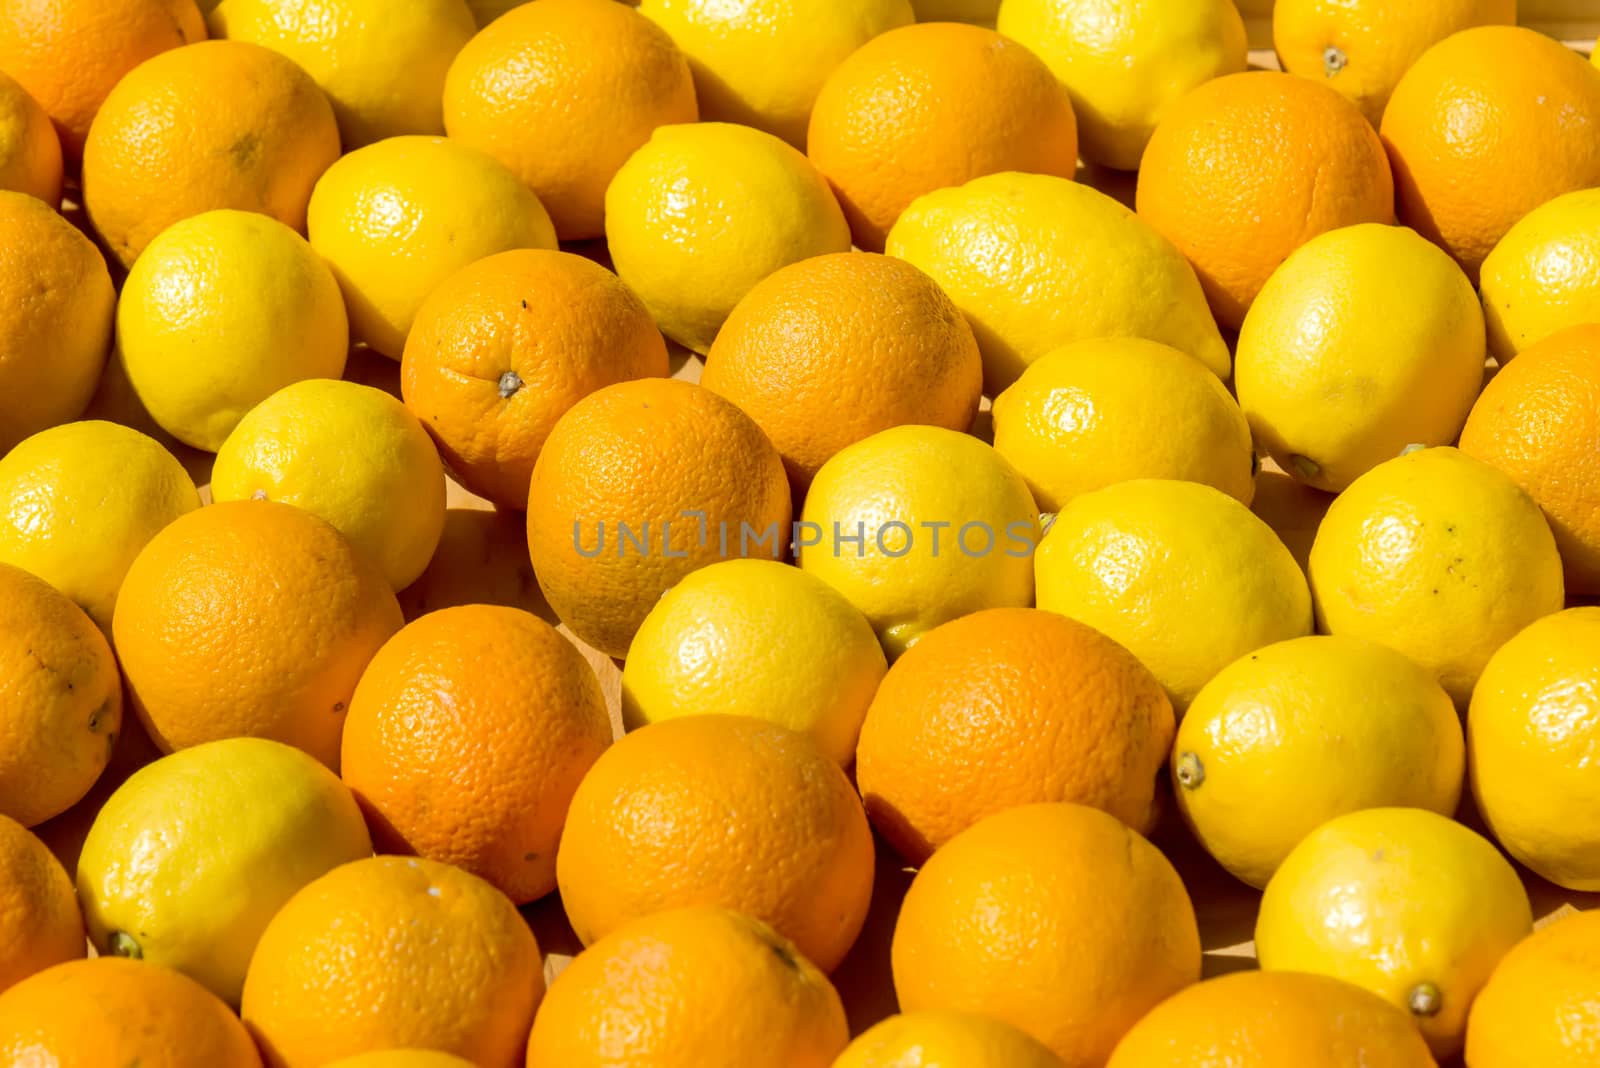 fresh oranges in a wooden box by vlaru